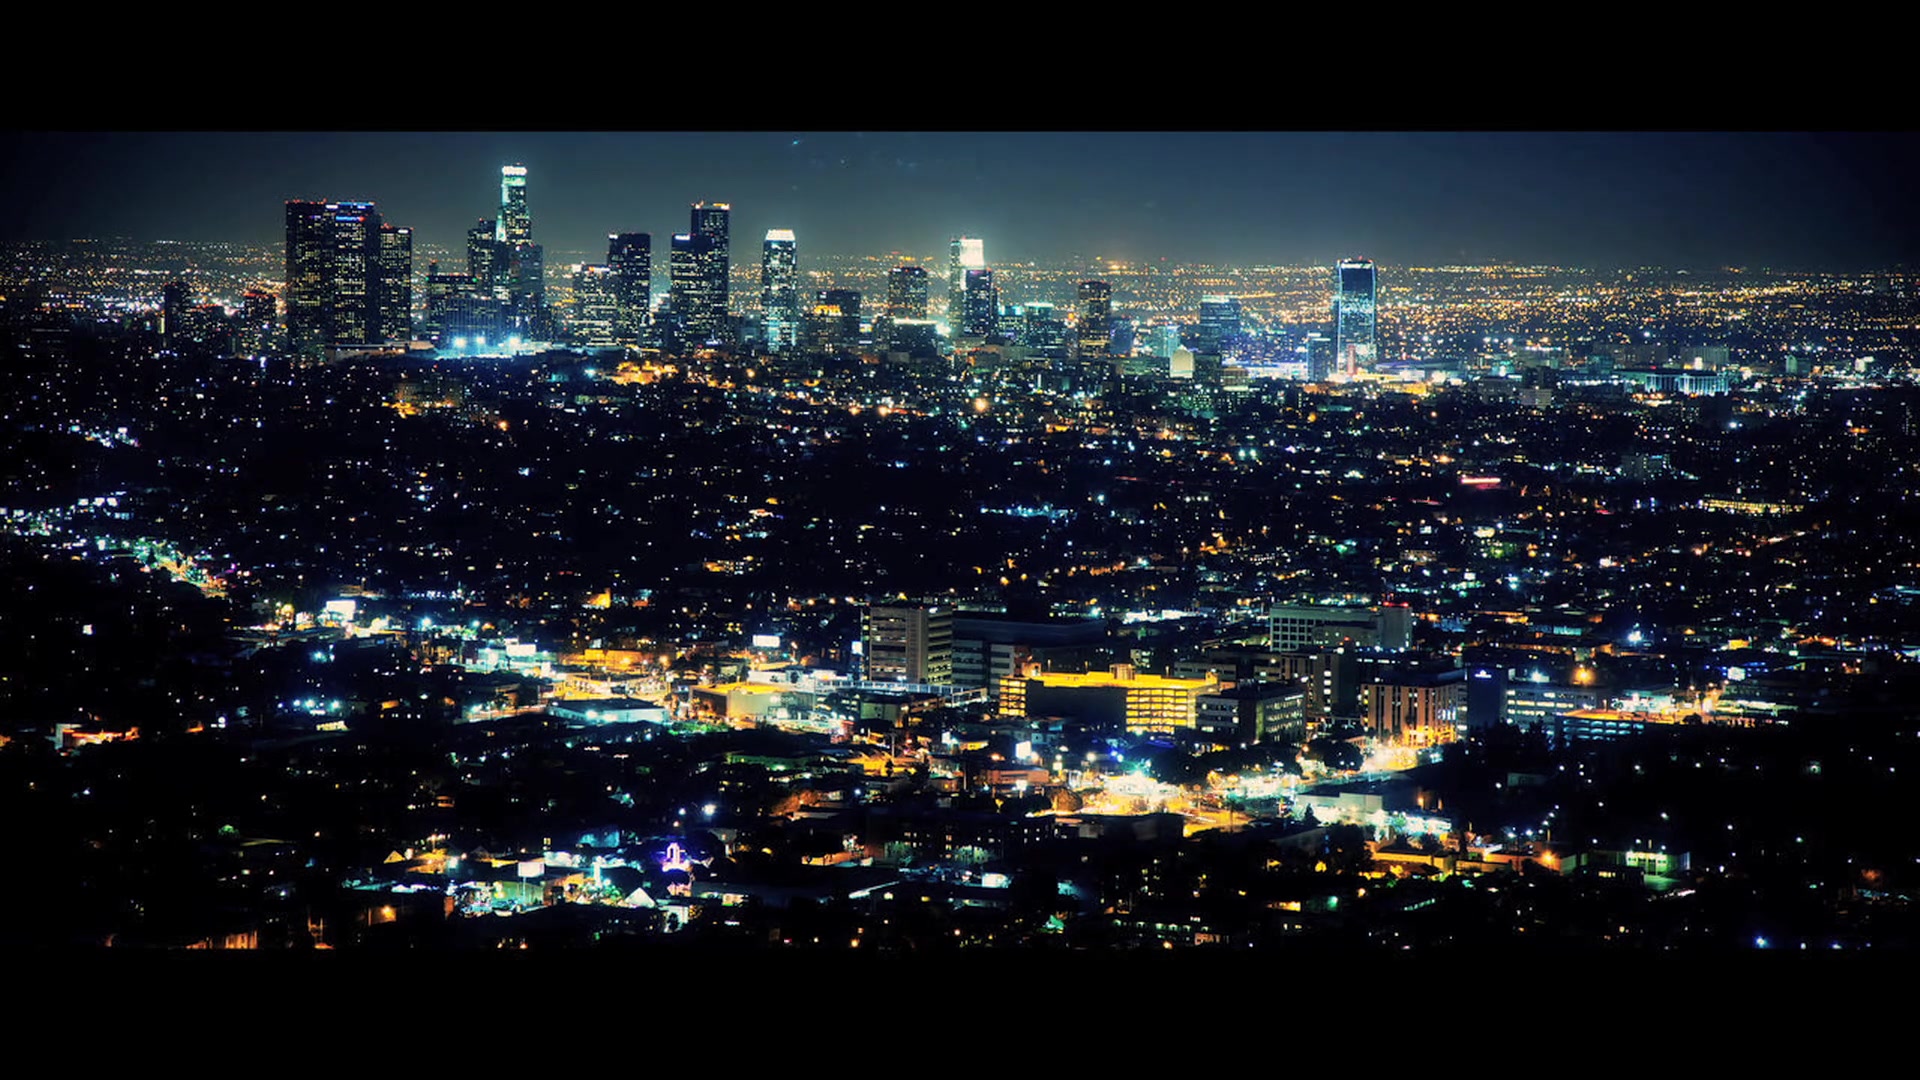 凌晨四点的洛杉矶壁纸图片